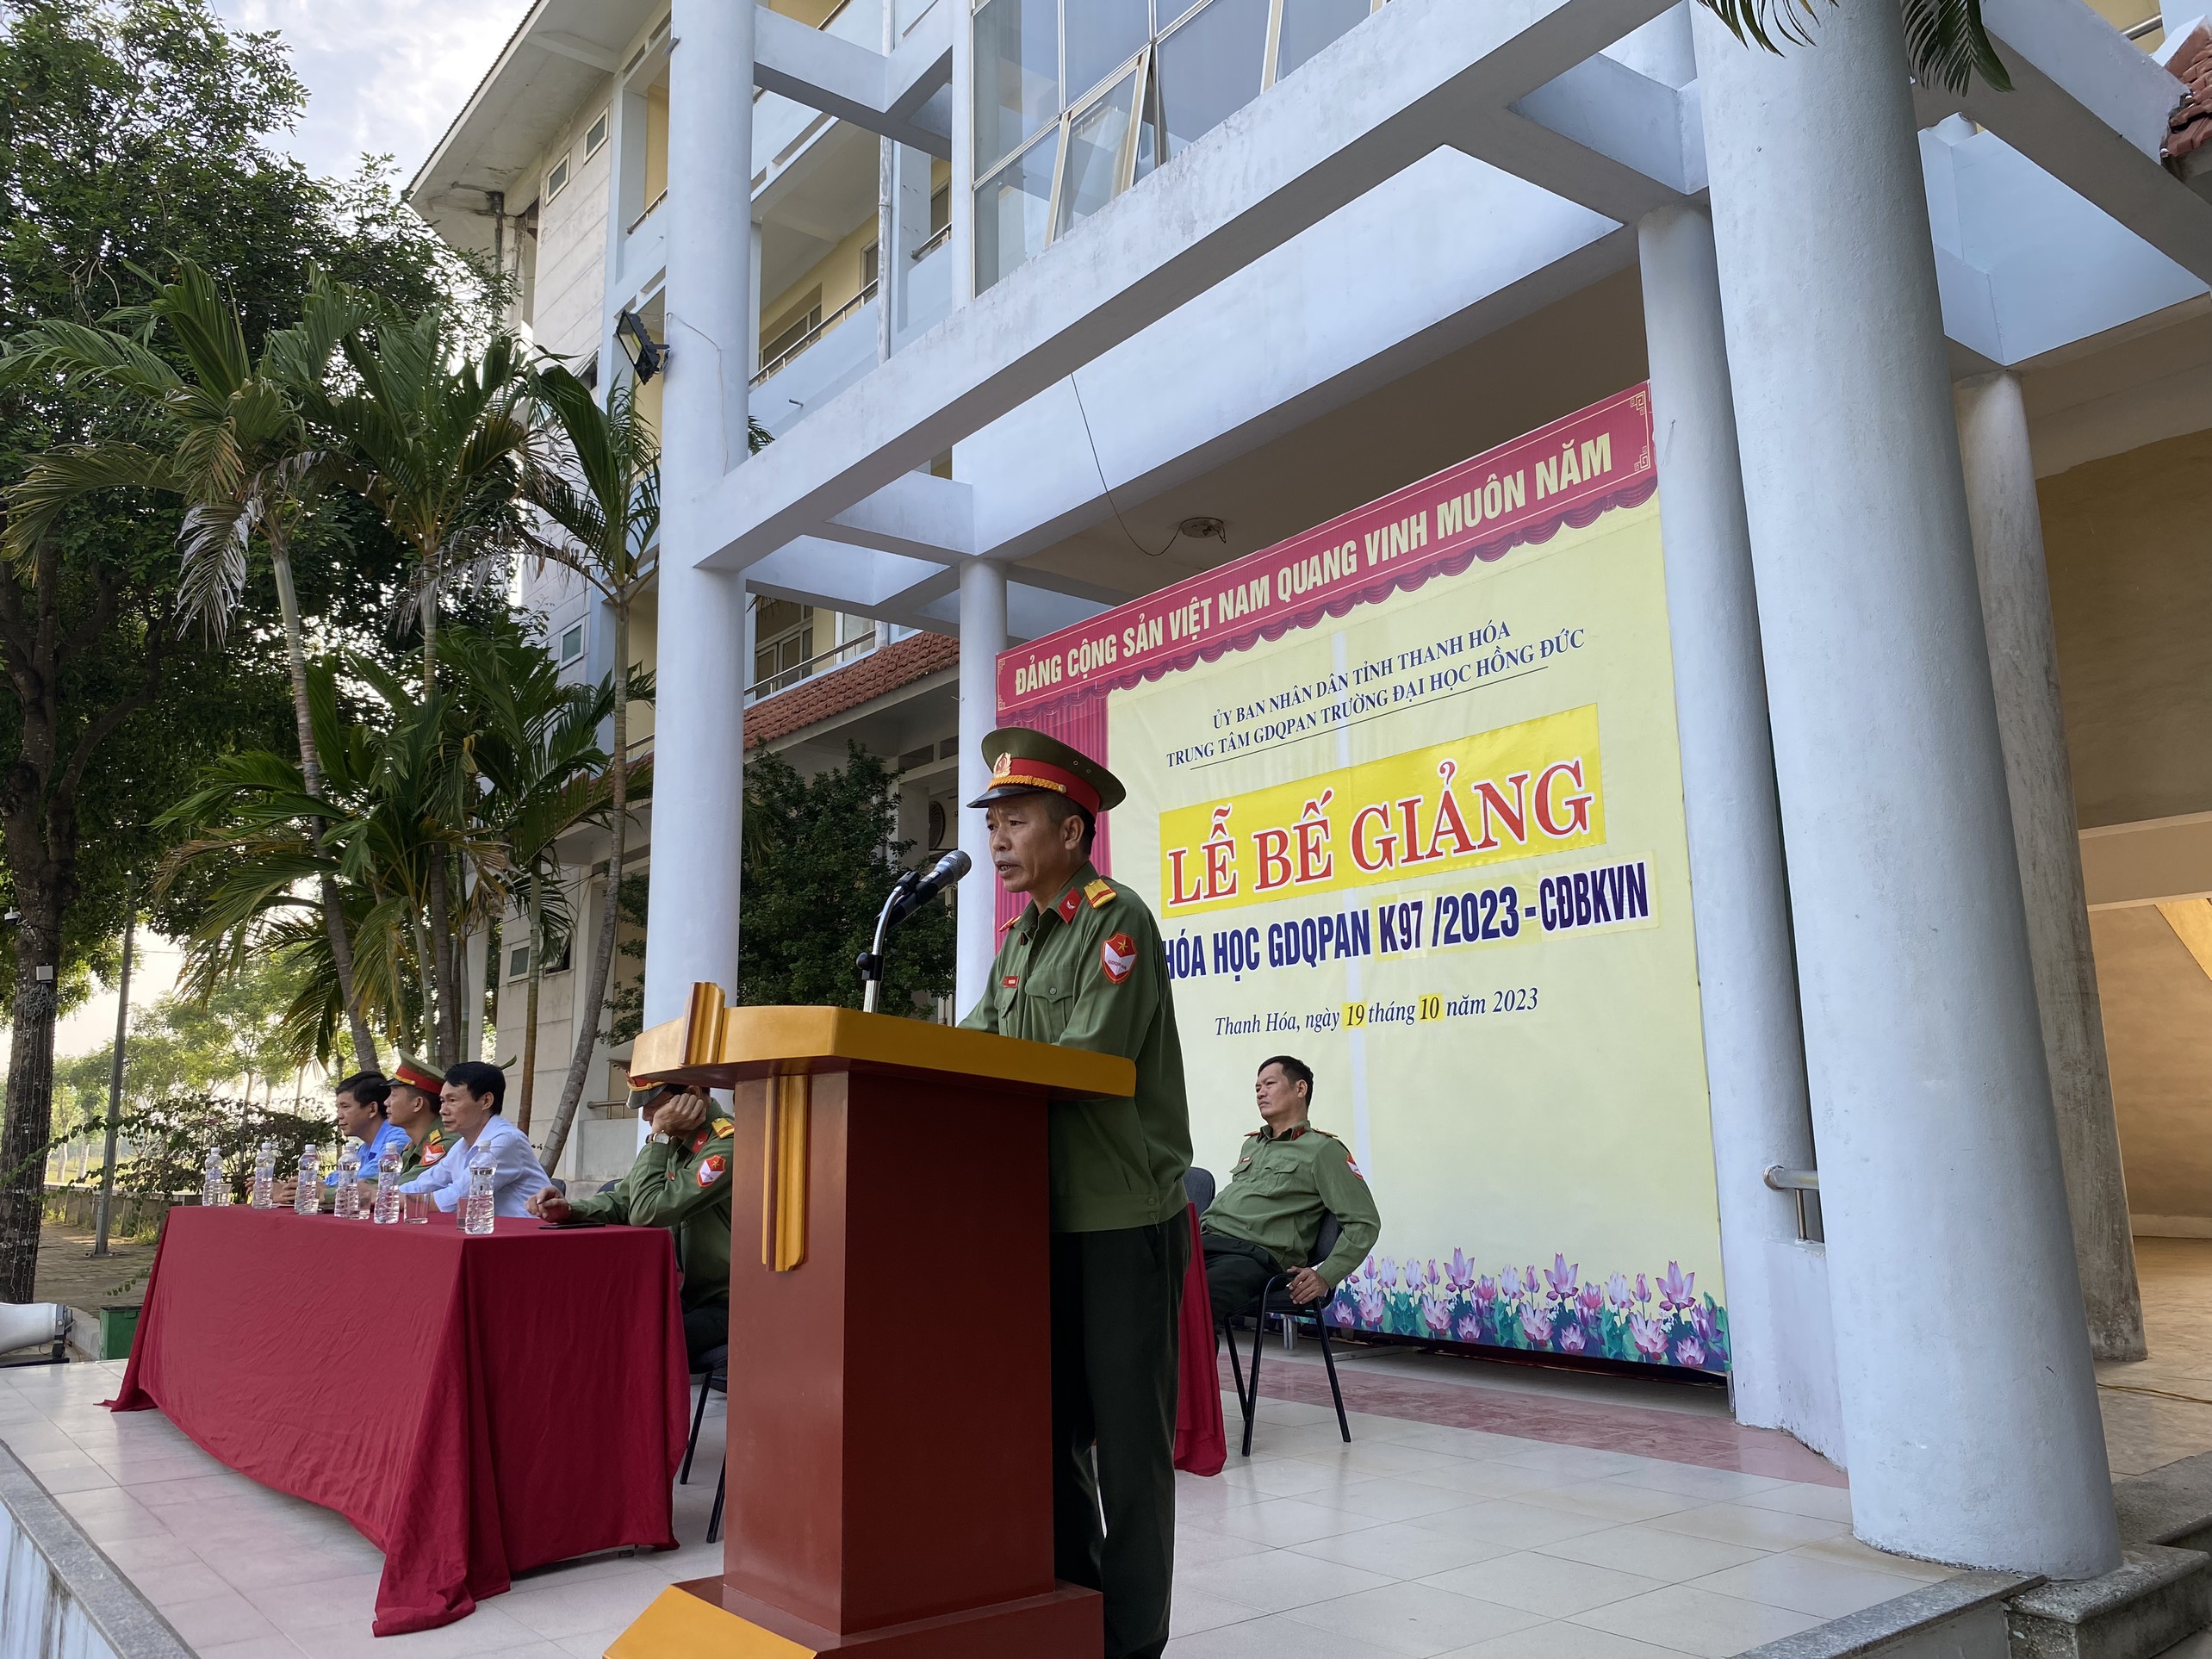 Lễ bế giảng khóa K97 GDQPAN cho sinh sinh viên trường Cao đẳng Bách Khoa Việt Nam năm 2023